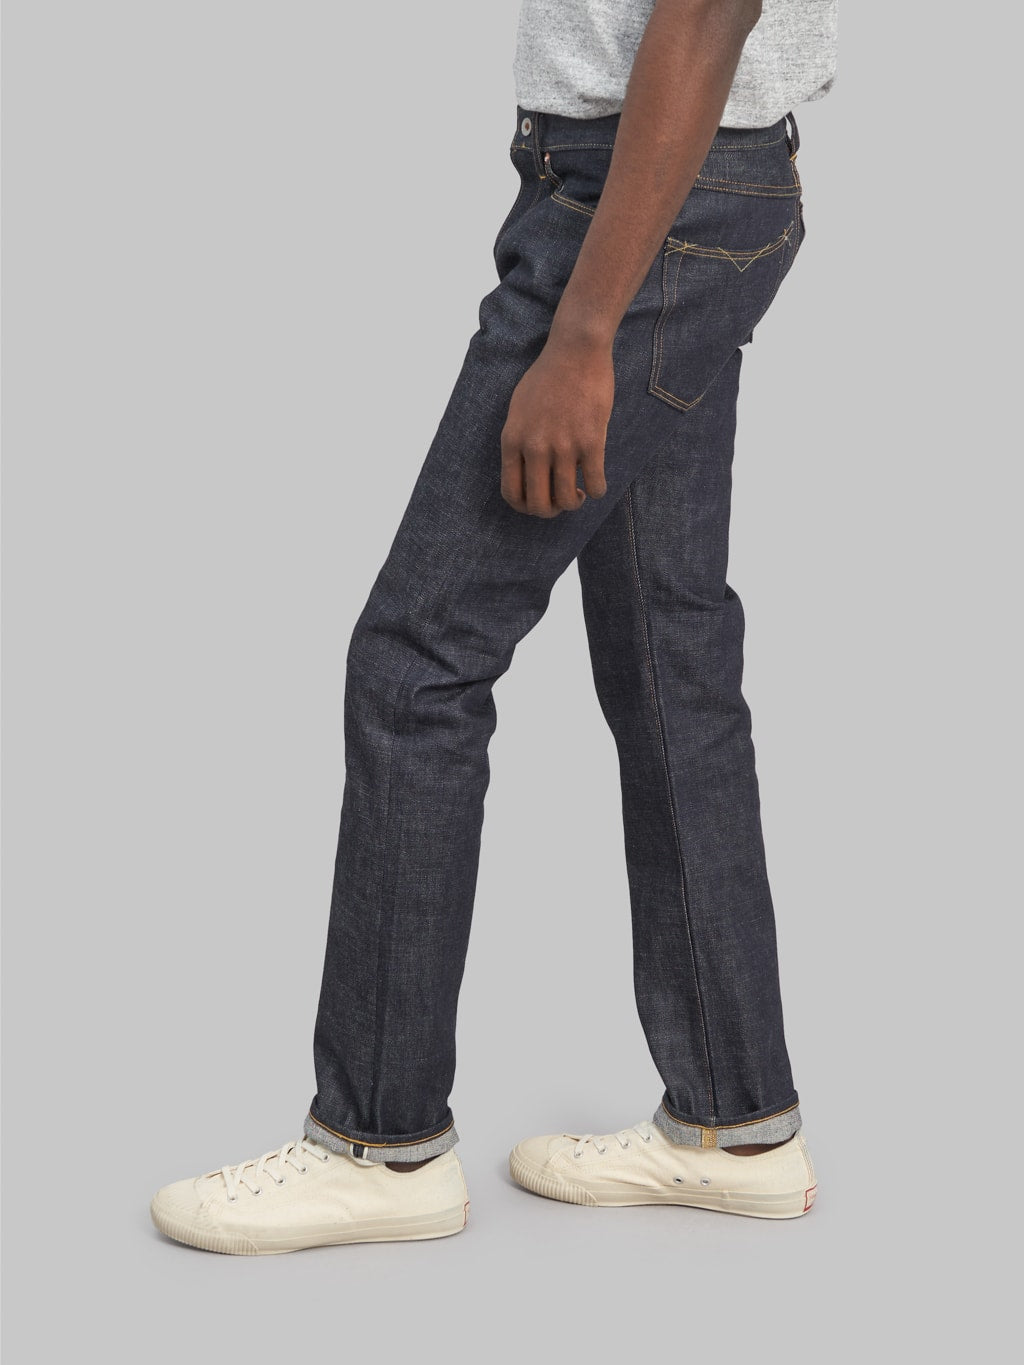 Stevenson Overall Big Sur 210 slim tapered jeans back fit